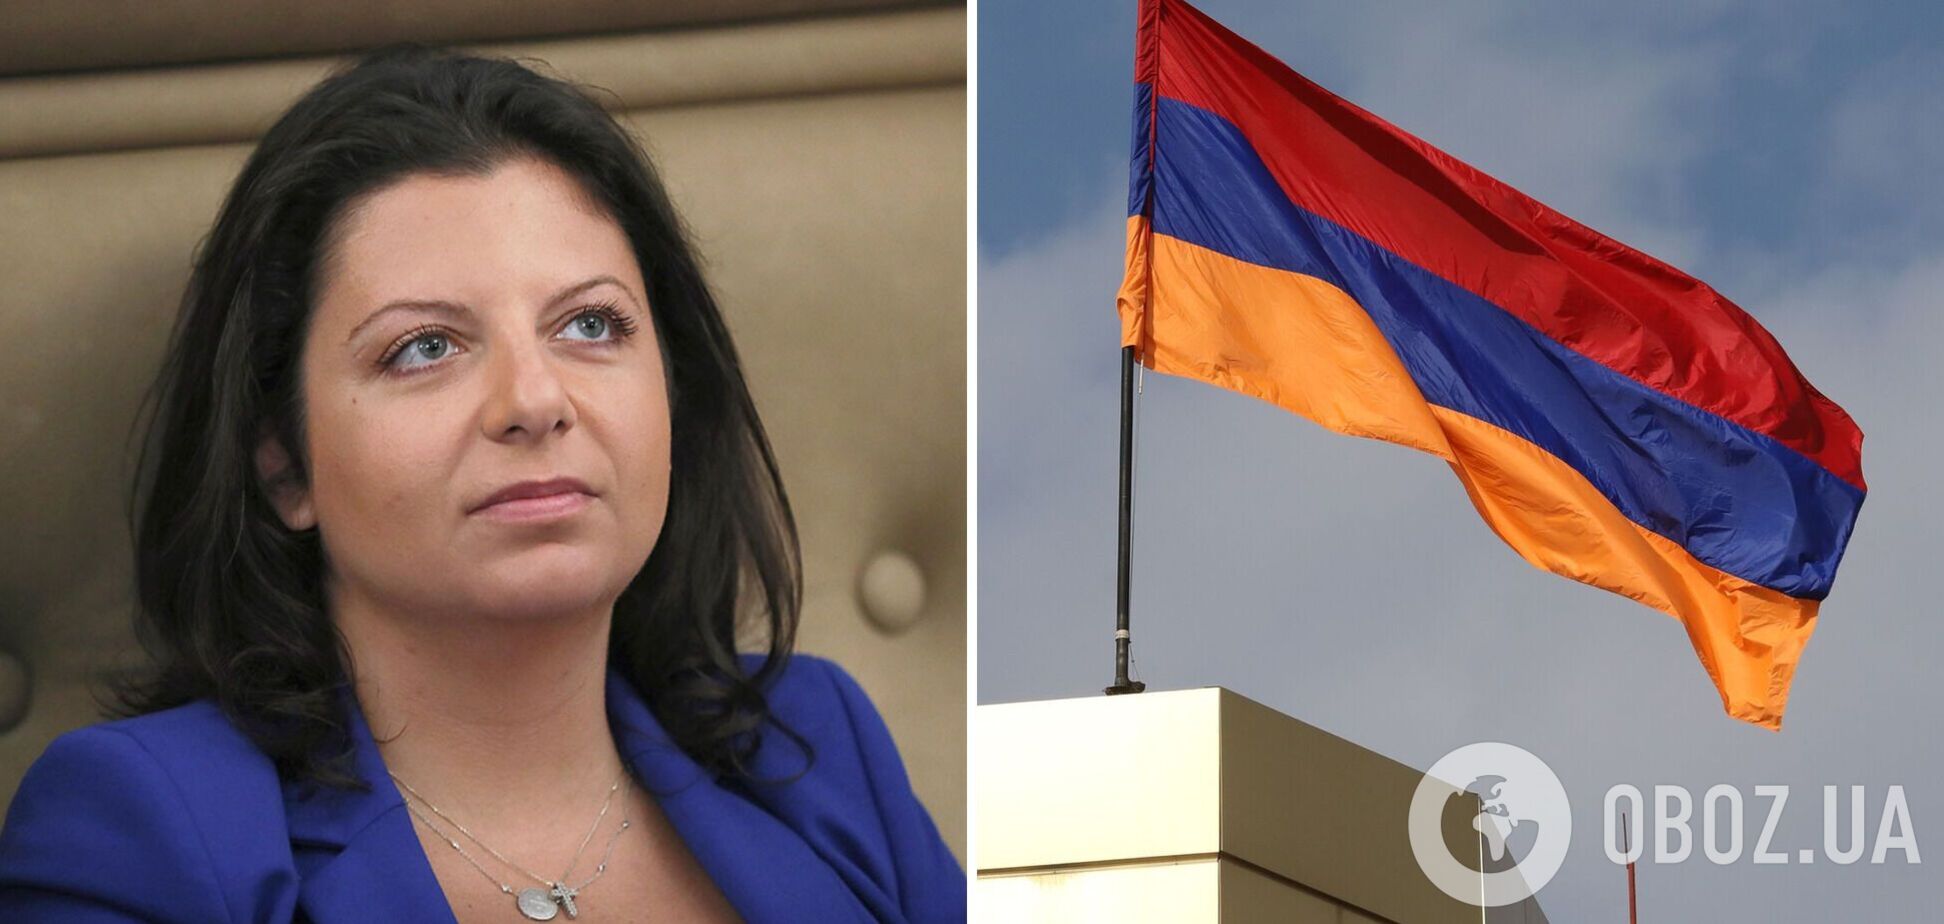 Армения запретила въезд в страну российской пропагандистке Симоньян, имеющей армянское происхождение